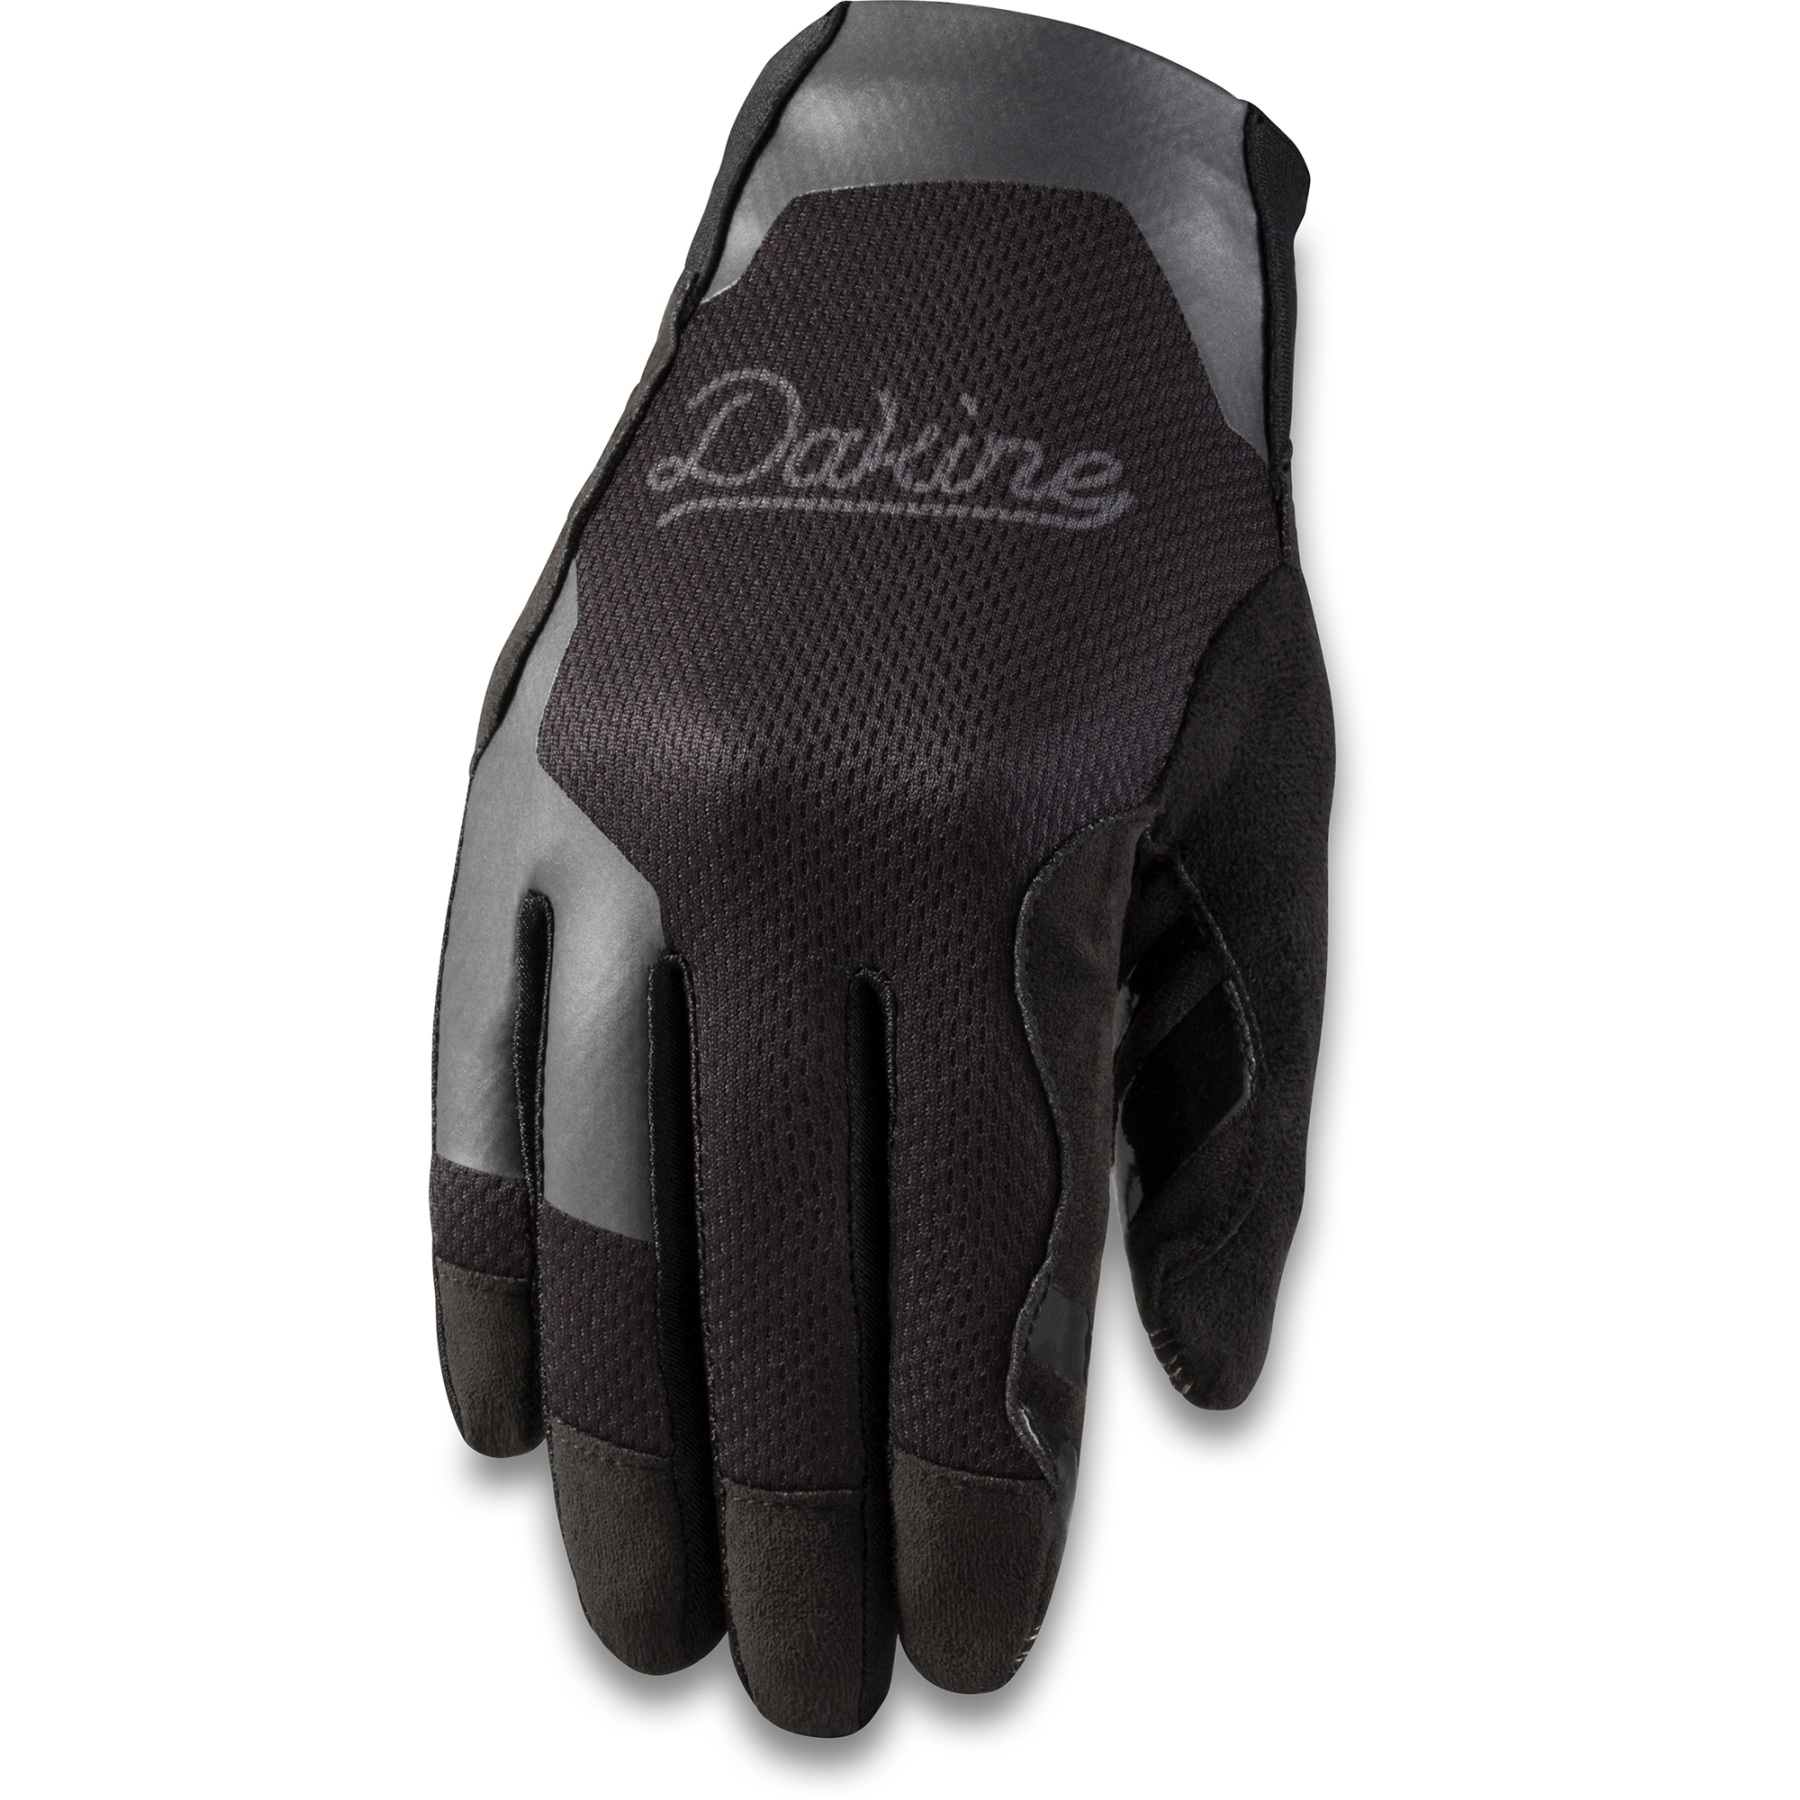 Produktbild von Dakine Covert Handschuhe Damen - schwarz